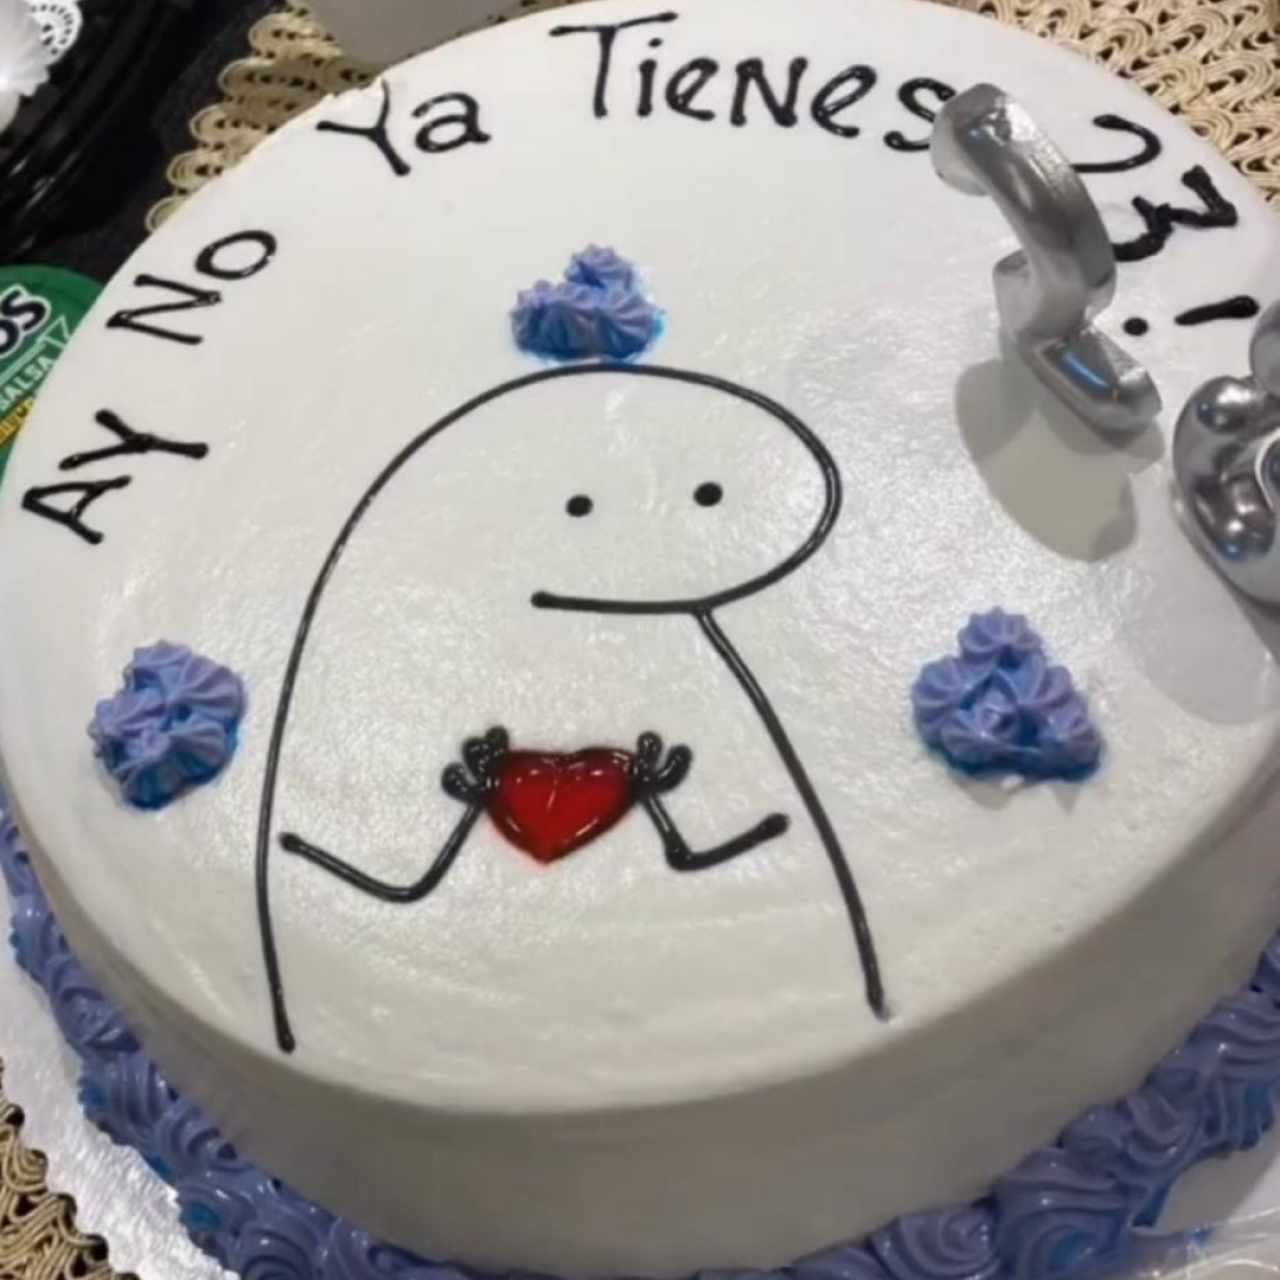 Dulcería - Cake tradicional 1